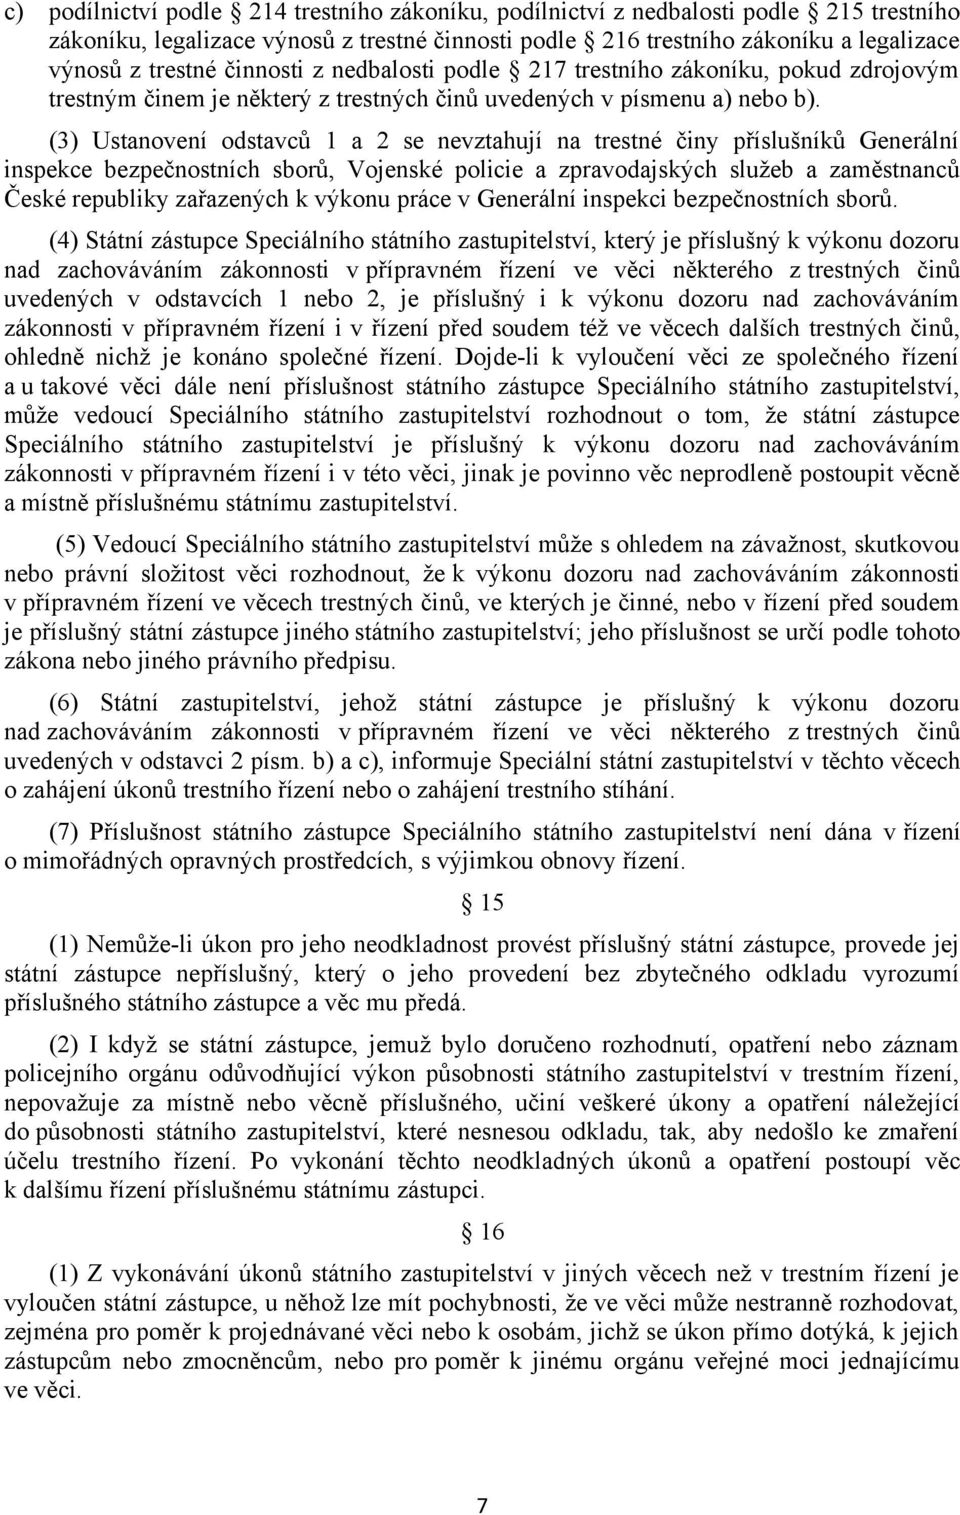 (3) Ustanovení odstavců 1 a 2 se nevztahují na trestné činy příslušníků Generální inspekce bezpečnostních sborů, Vojenské policie a zpravodajských služeb a zaměstnanců České republiky zařazených k